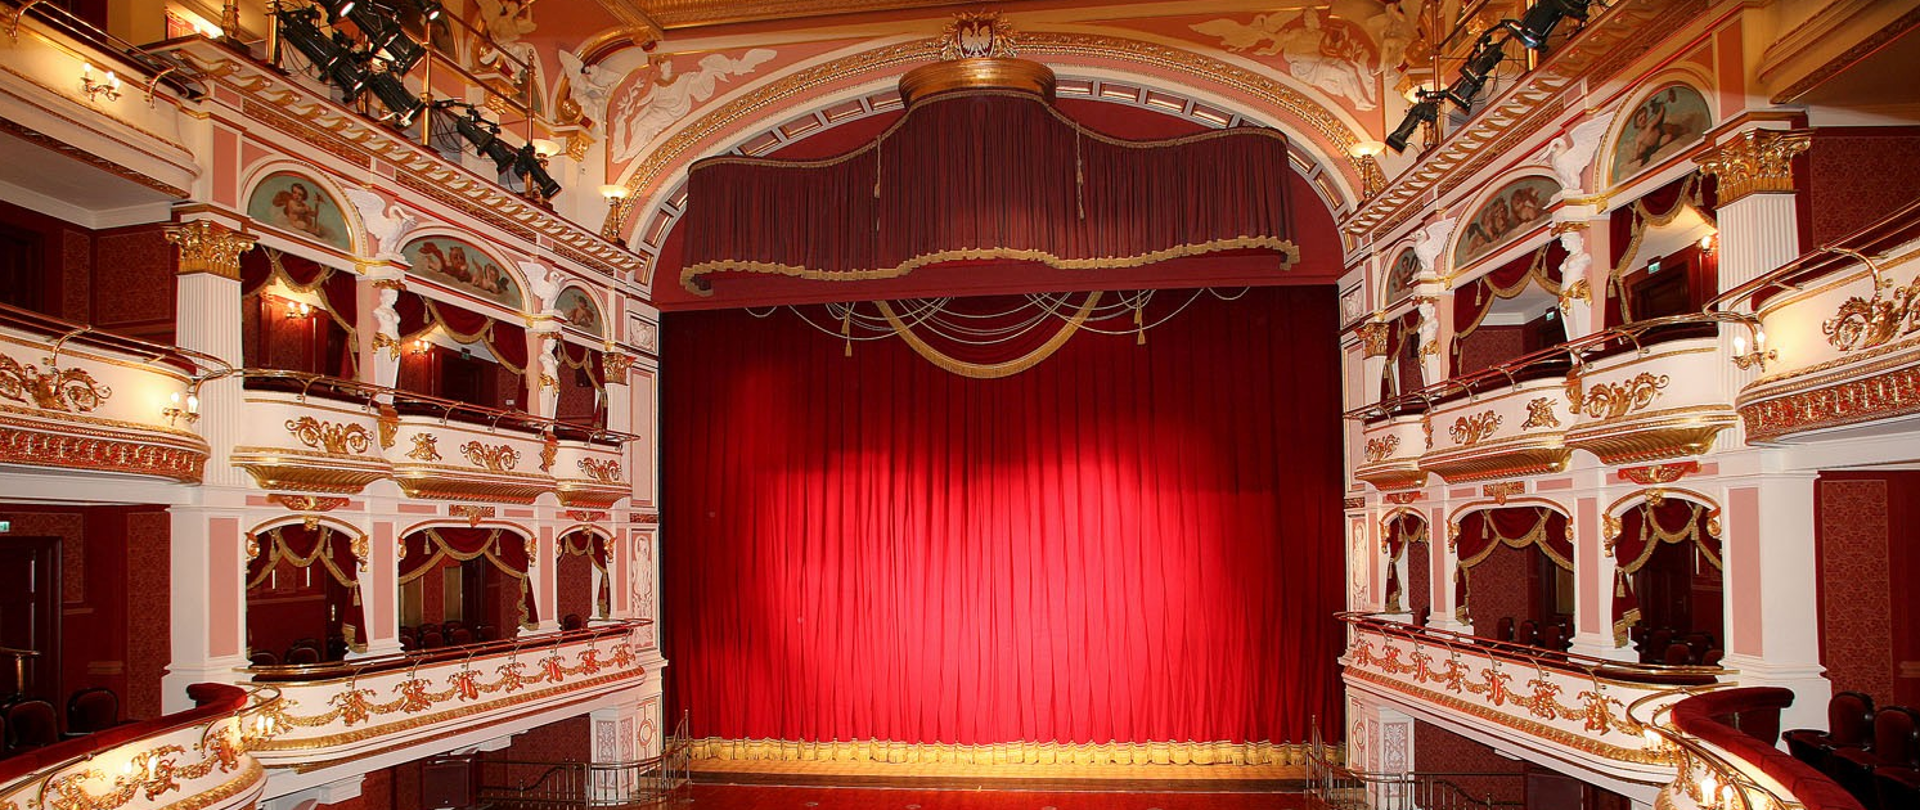 W centrum scena operowa z zasłoniętą czerwoną kurtyną , po prawej i lewej strony balkony operowe.